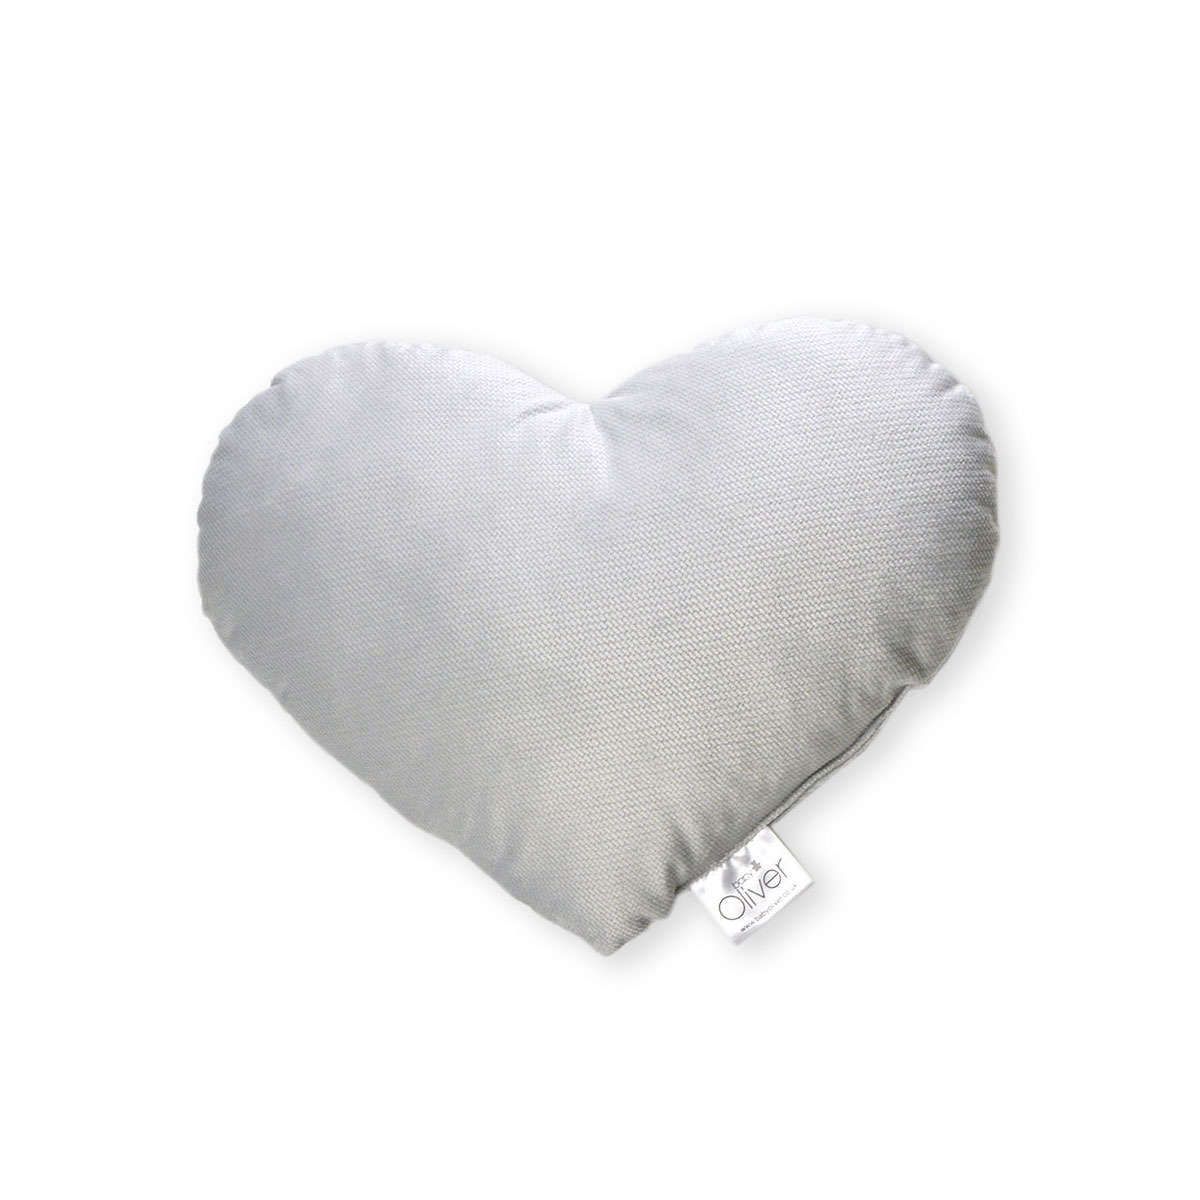 Διακοσμητικό μαξιλάρι βελουτέ Καρδιά des.142 grey baby oliver